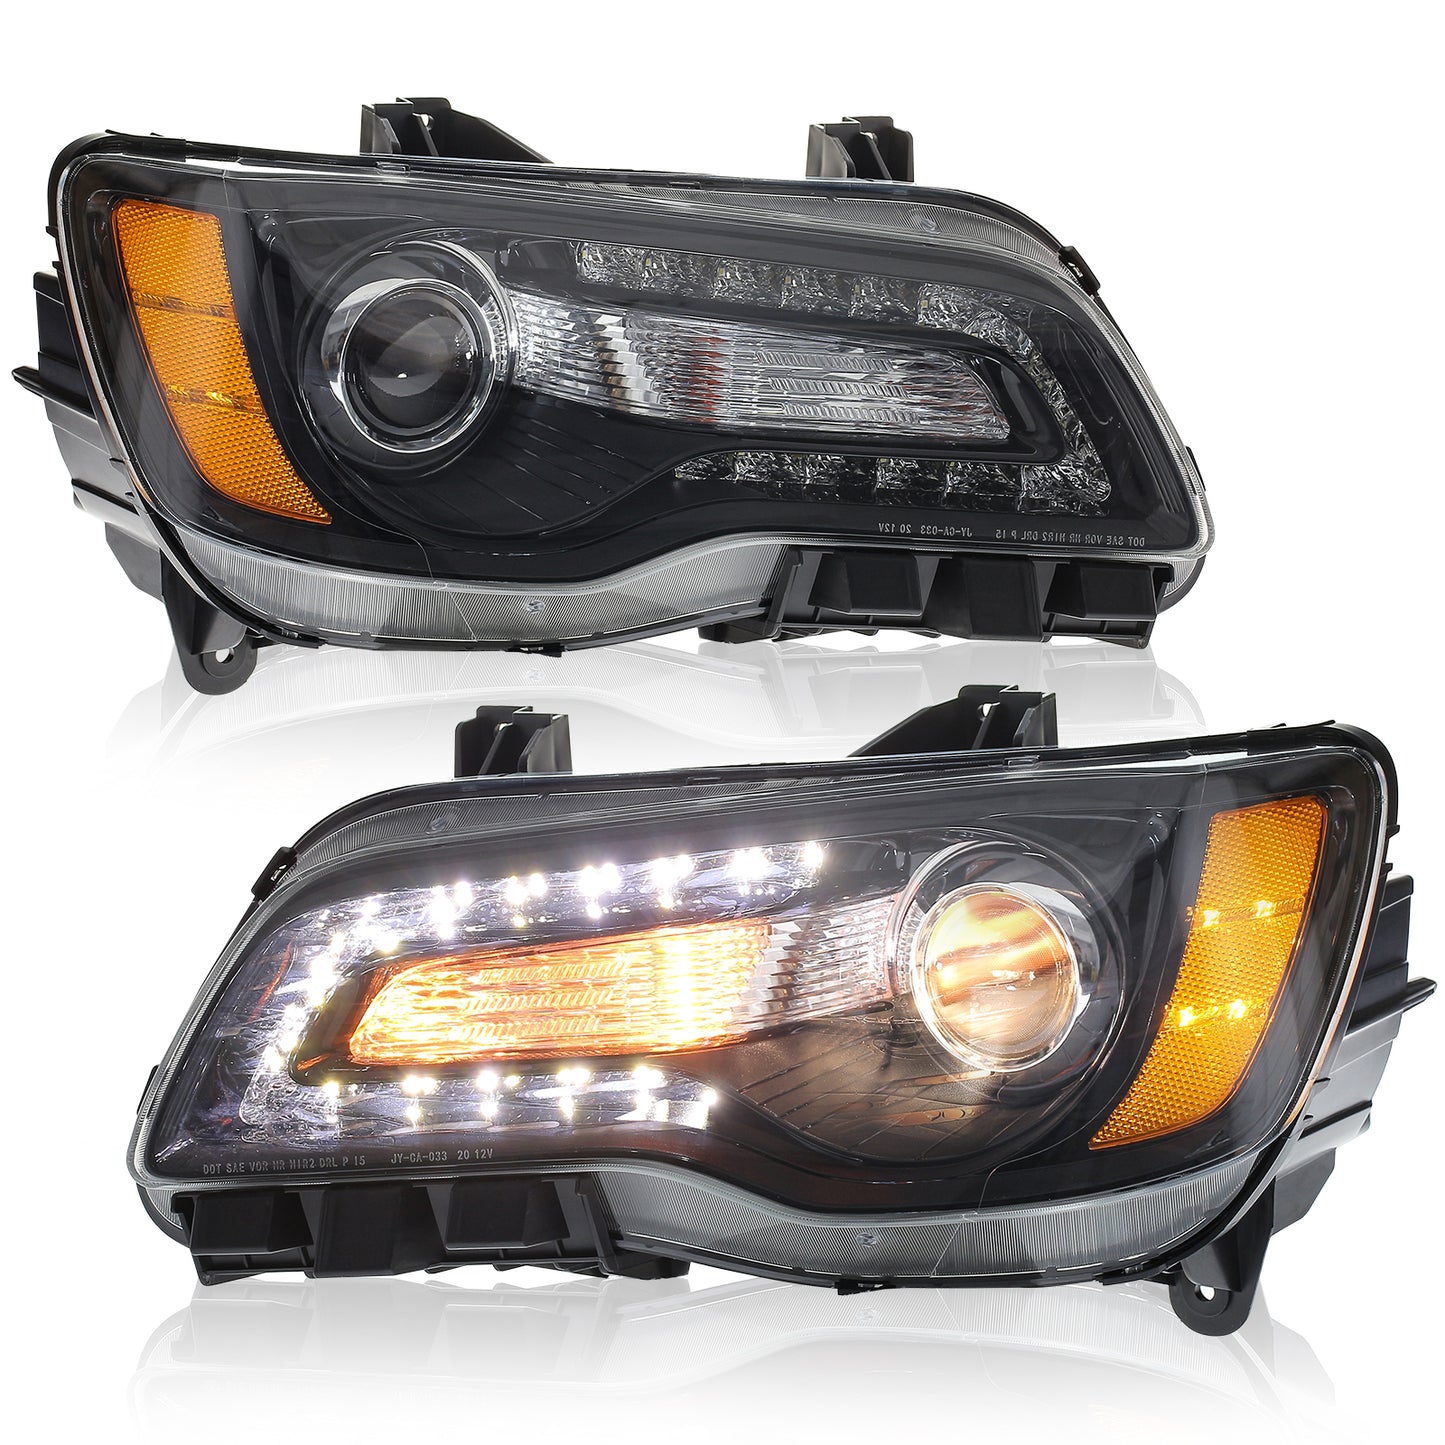 JOLUNG Full LED Headlights Assembly For Chrysler 300 2011-2014